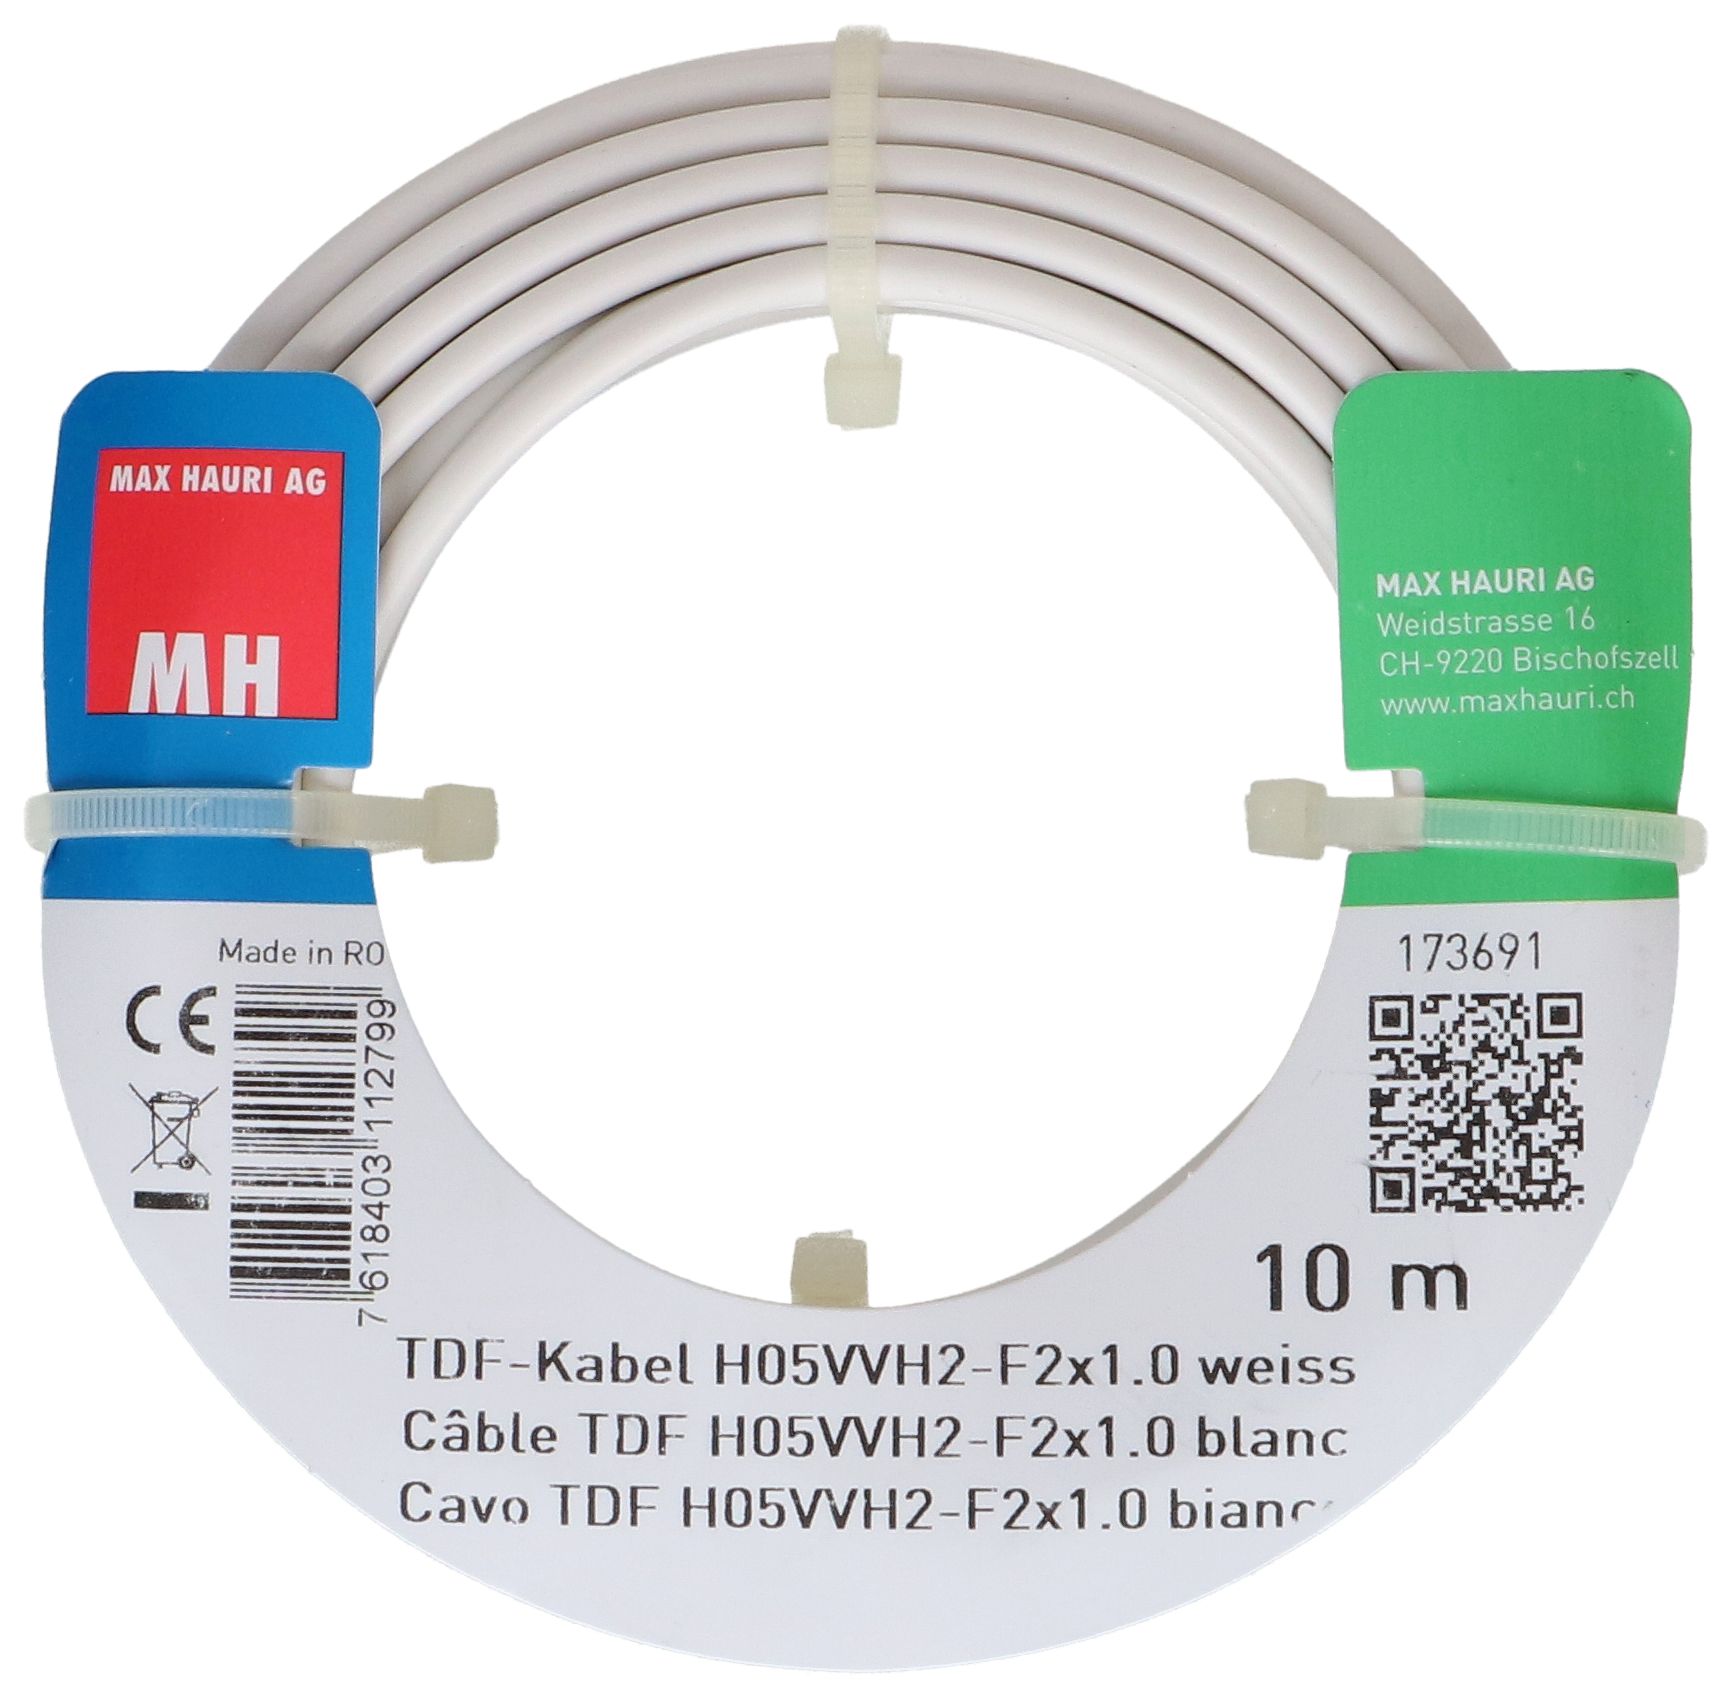 TDF-Kabel H05VVH2-F2X1.0 10m weiss